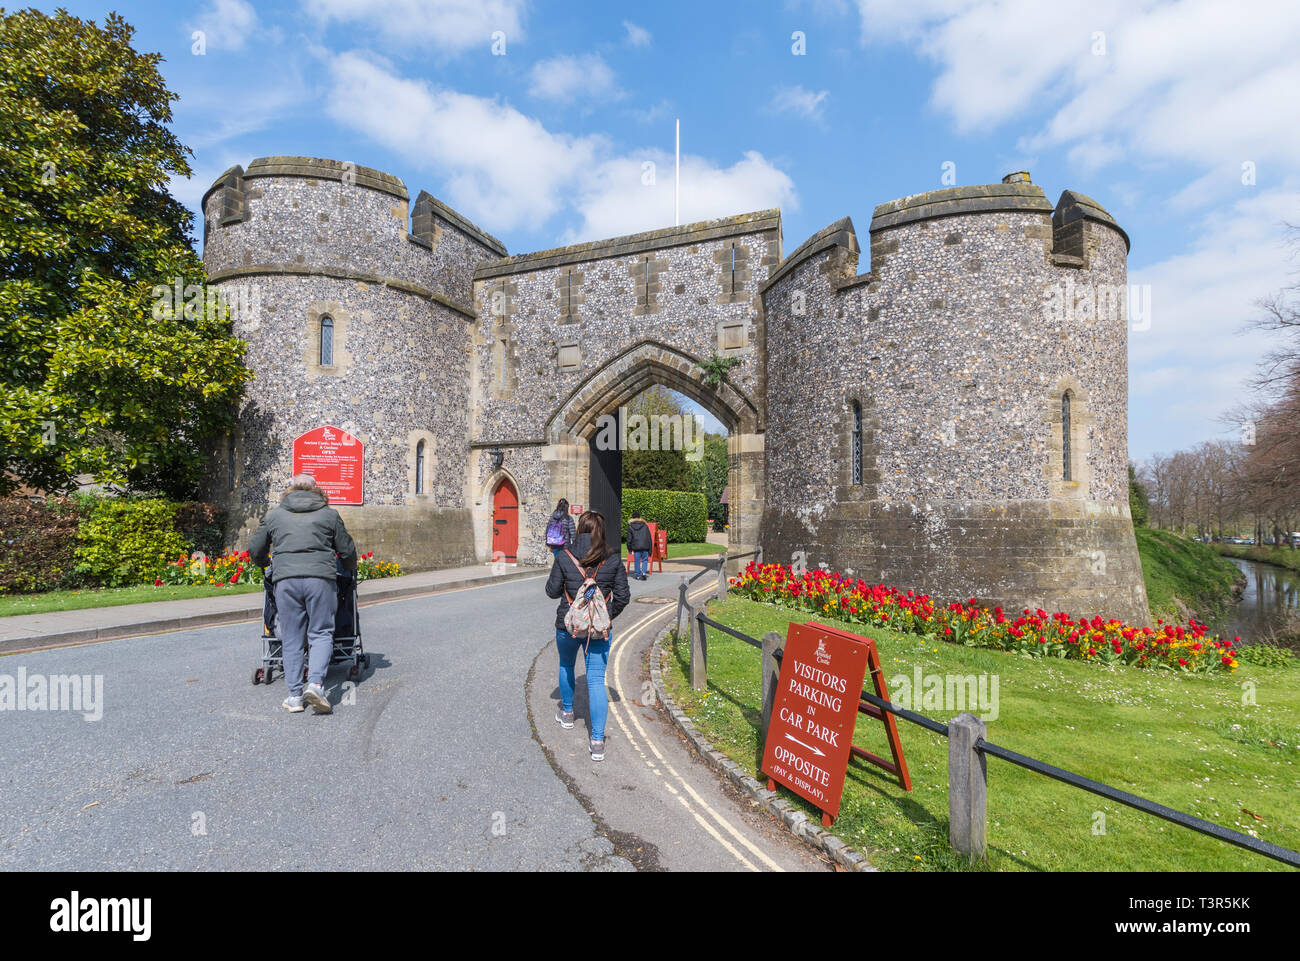 Les touristes à pied dans l'entrée d'Arundel Castle, un château médiéval dans le marché de la ville historique d'Arundel au printemps dans le West Sussex, Royaume-Uni. Arundel UK. Banque D'Images